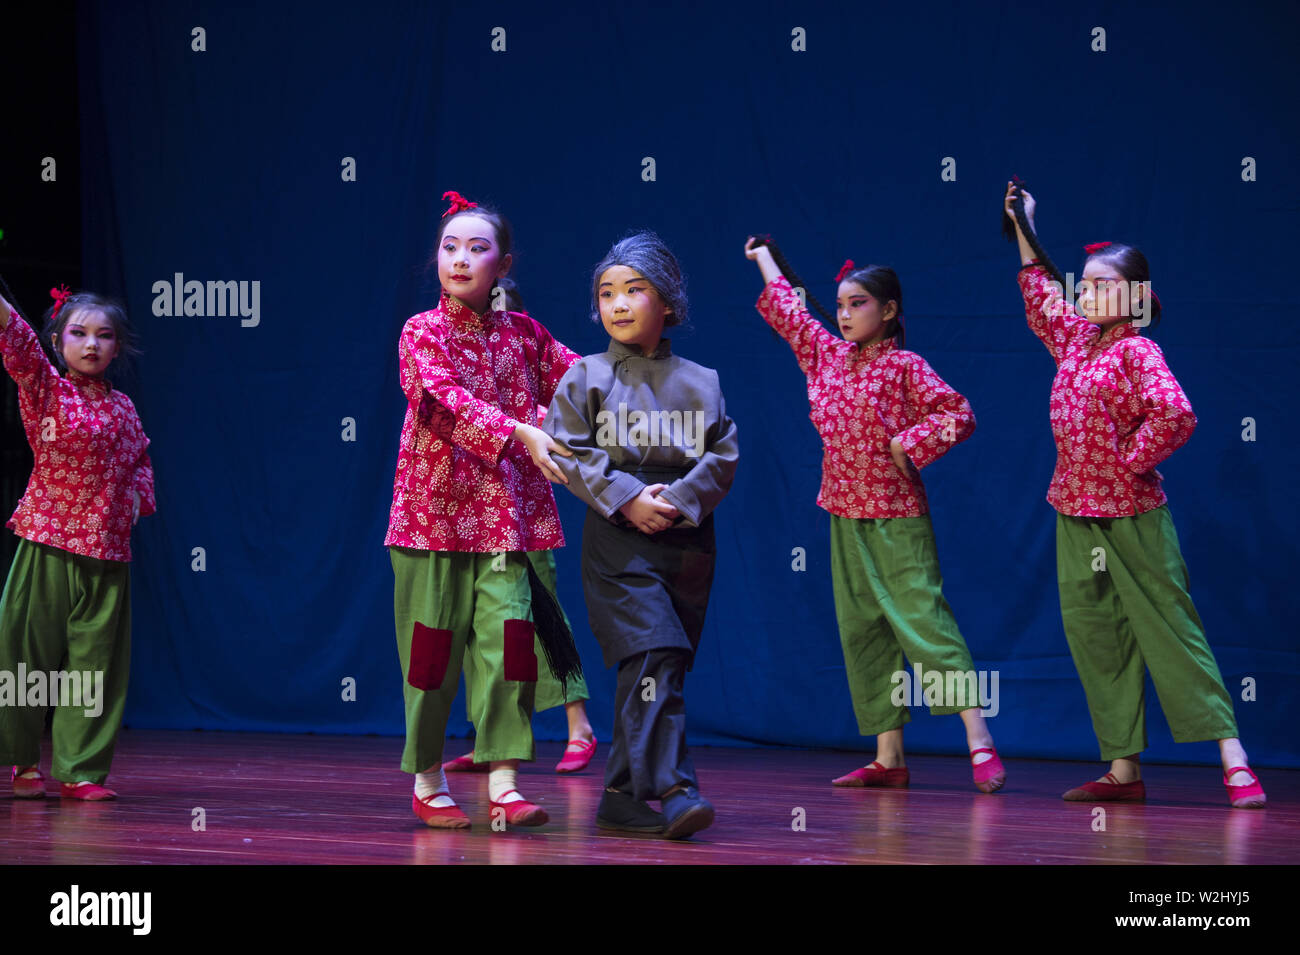 9 luglio 2019 - Jiangsu, Jiangsu, Cina - Jiangsu, Cina - 9 Luglio 2019: durante le vacanze estive, insegnanti professionali sono stati invitati ad insegnare a Opera di Pechino arte per bambini rurali in haian città di Nantong, provincia dello Jiangsu.lasciate che i bambini accettano l'influenza della cultura tradizionale, sentono il fascino della quintessenza della Cina. (Credito Immagine: © SIPA Asia via ZUMA filo) Foto Stock